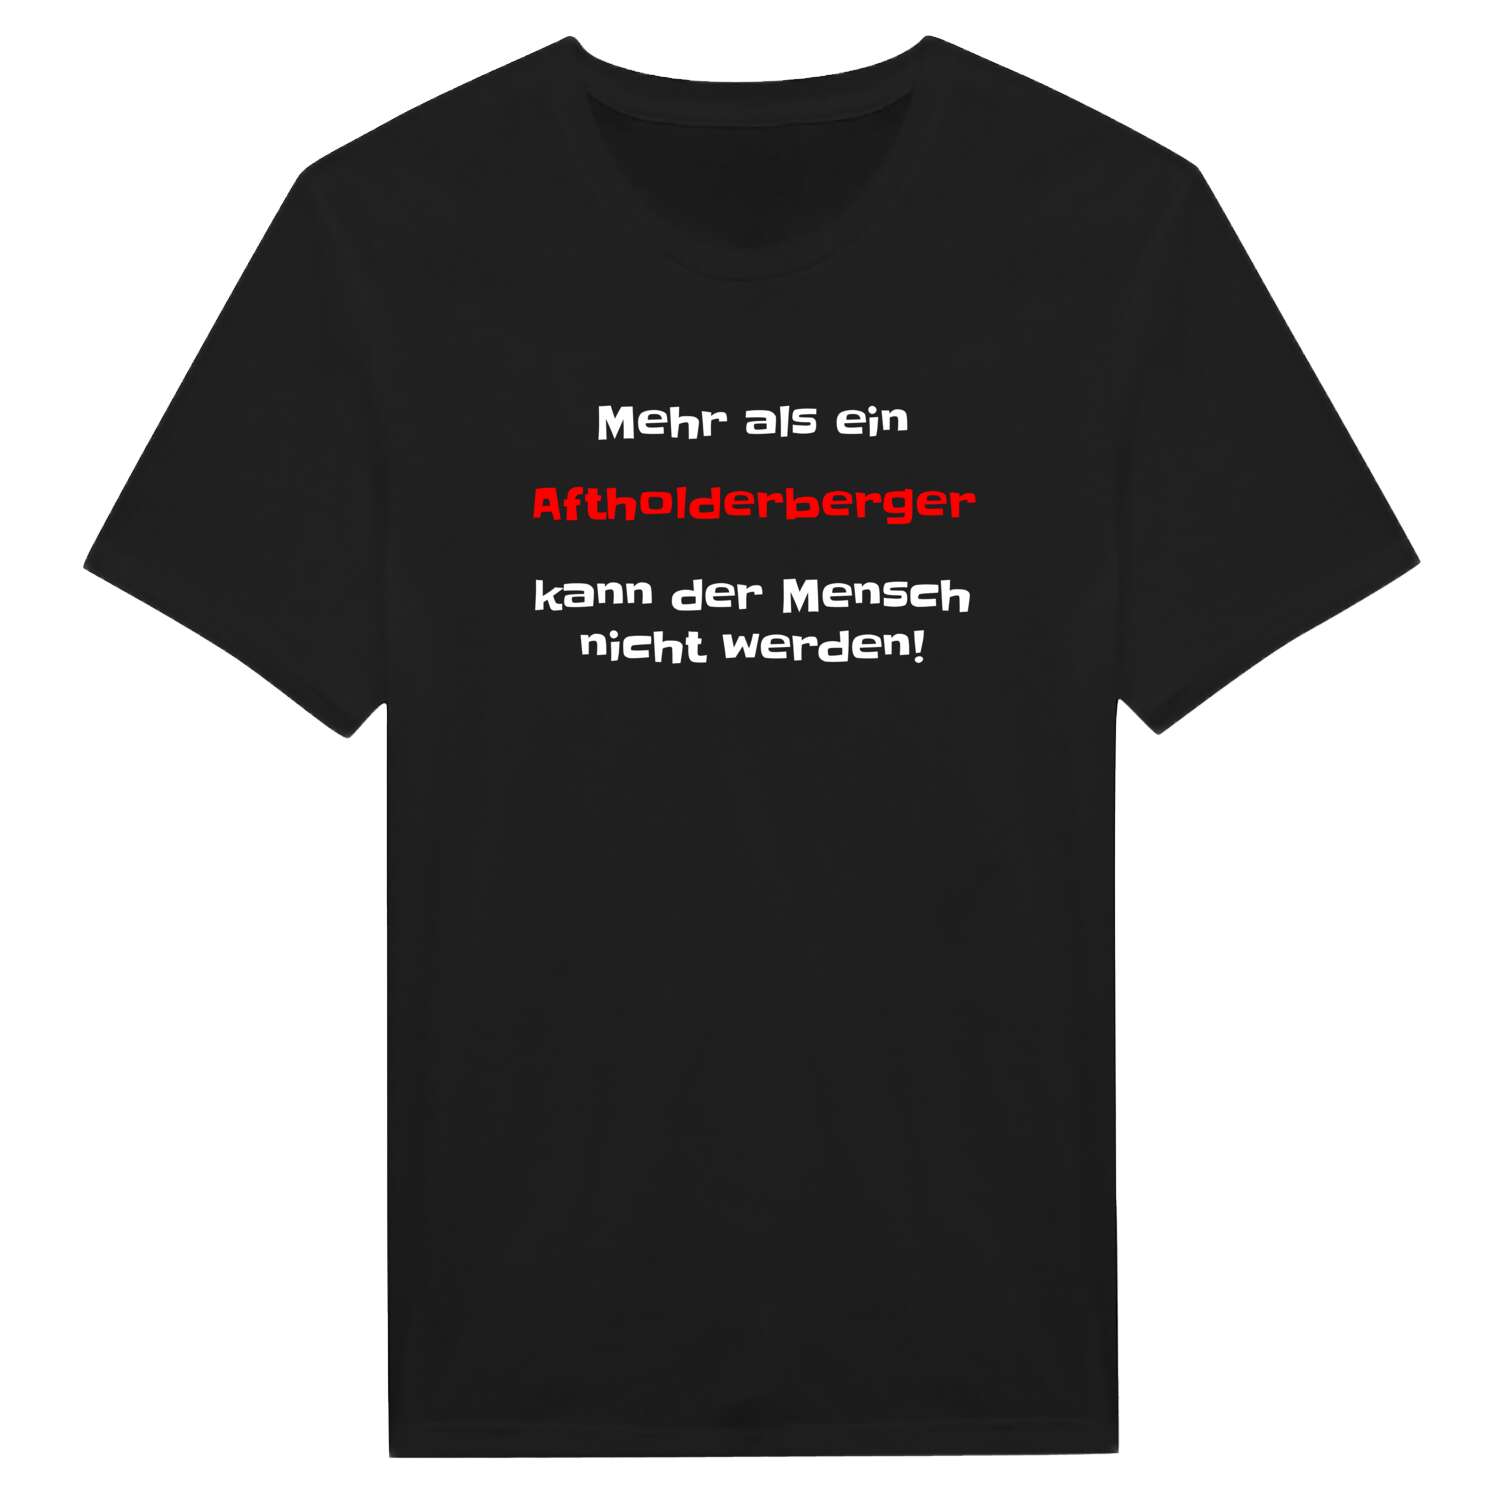 Aftholderberg T-Shirt »Mehr als ein«